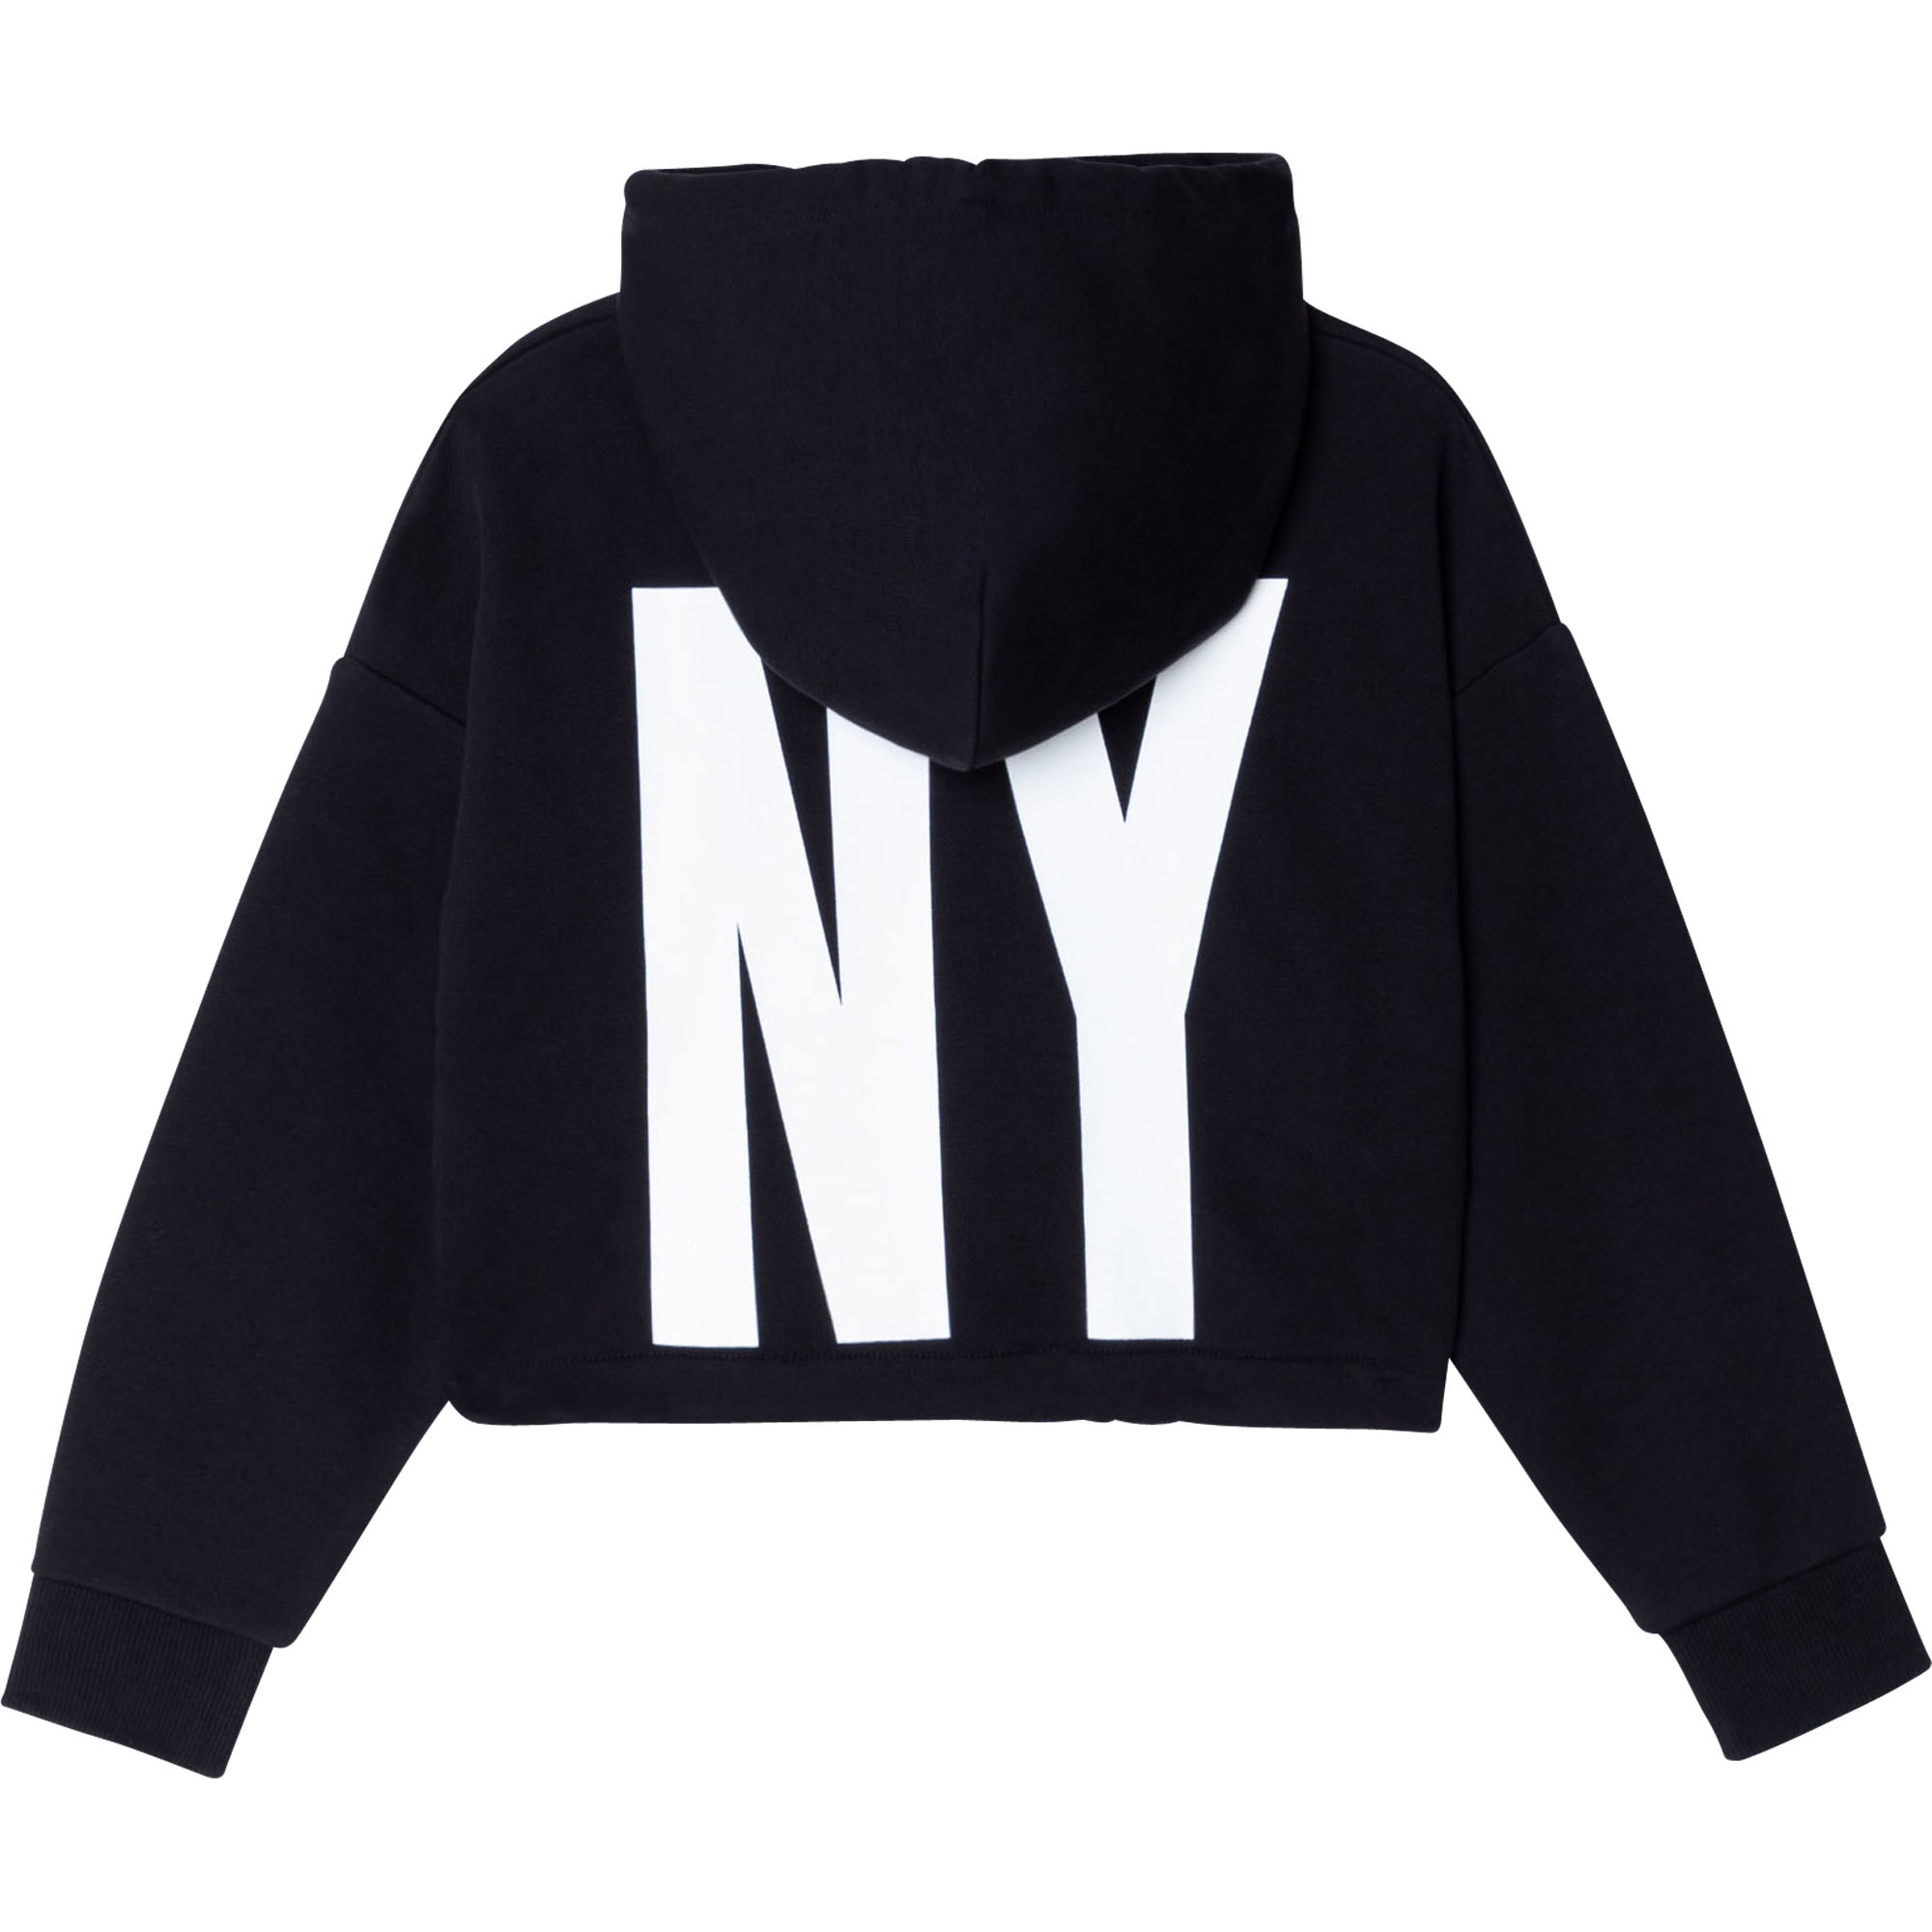 Hooded printed sweatshirt DKNY for GIRL